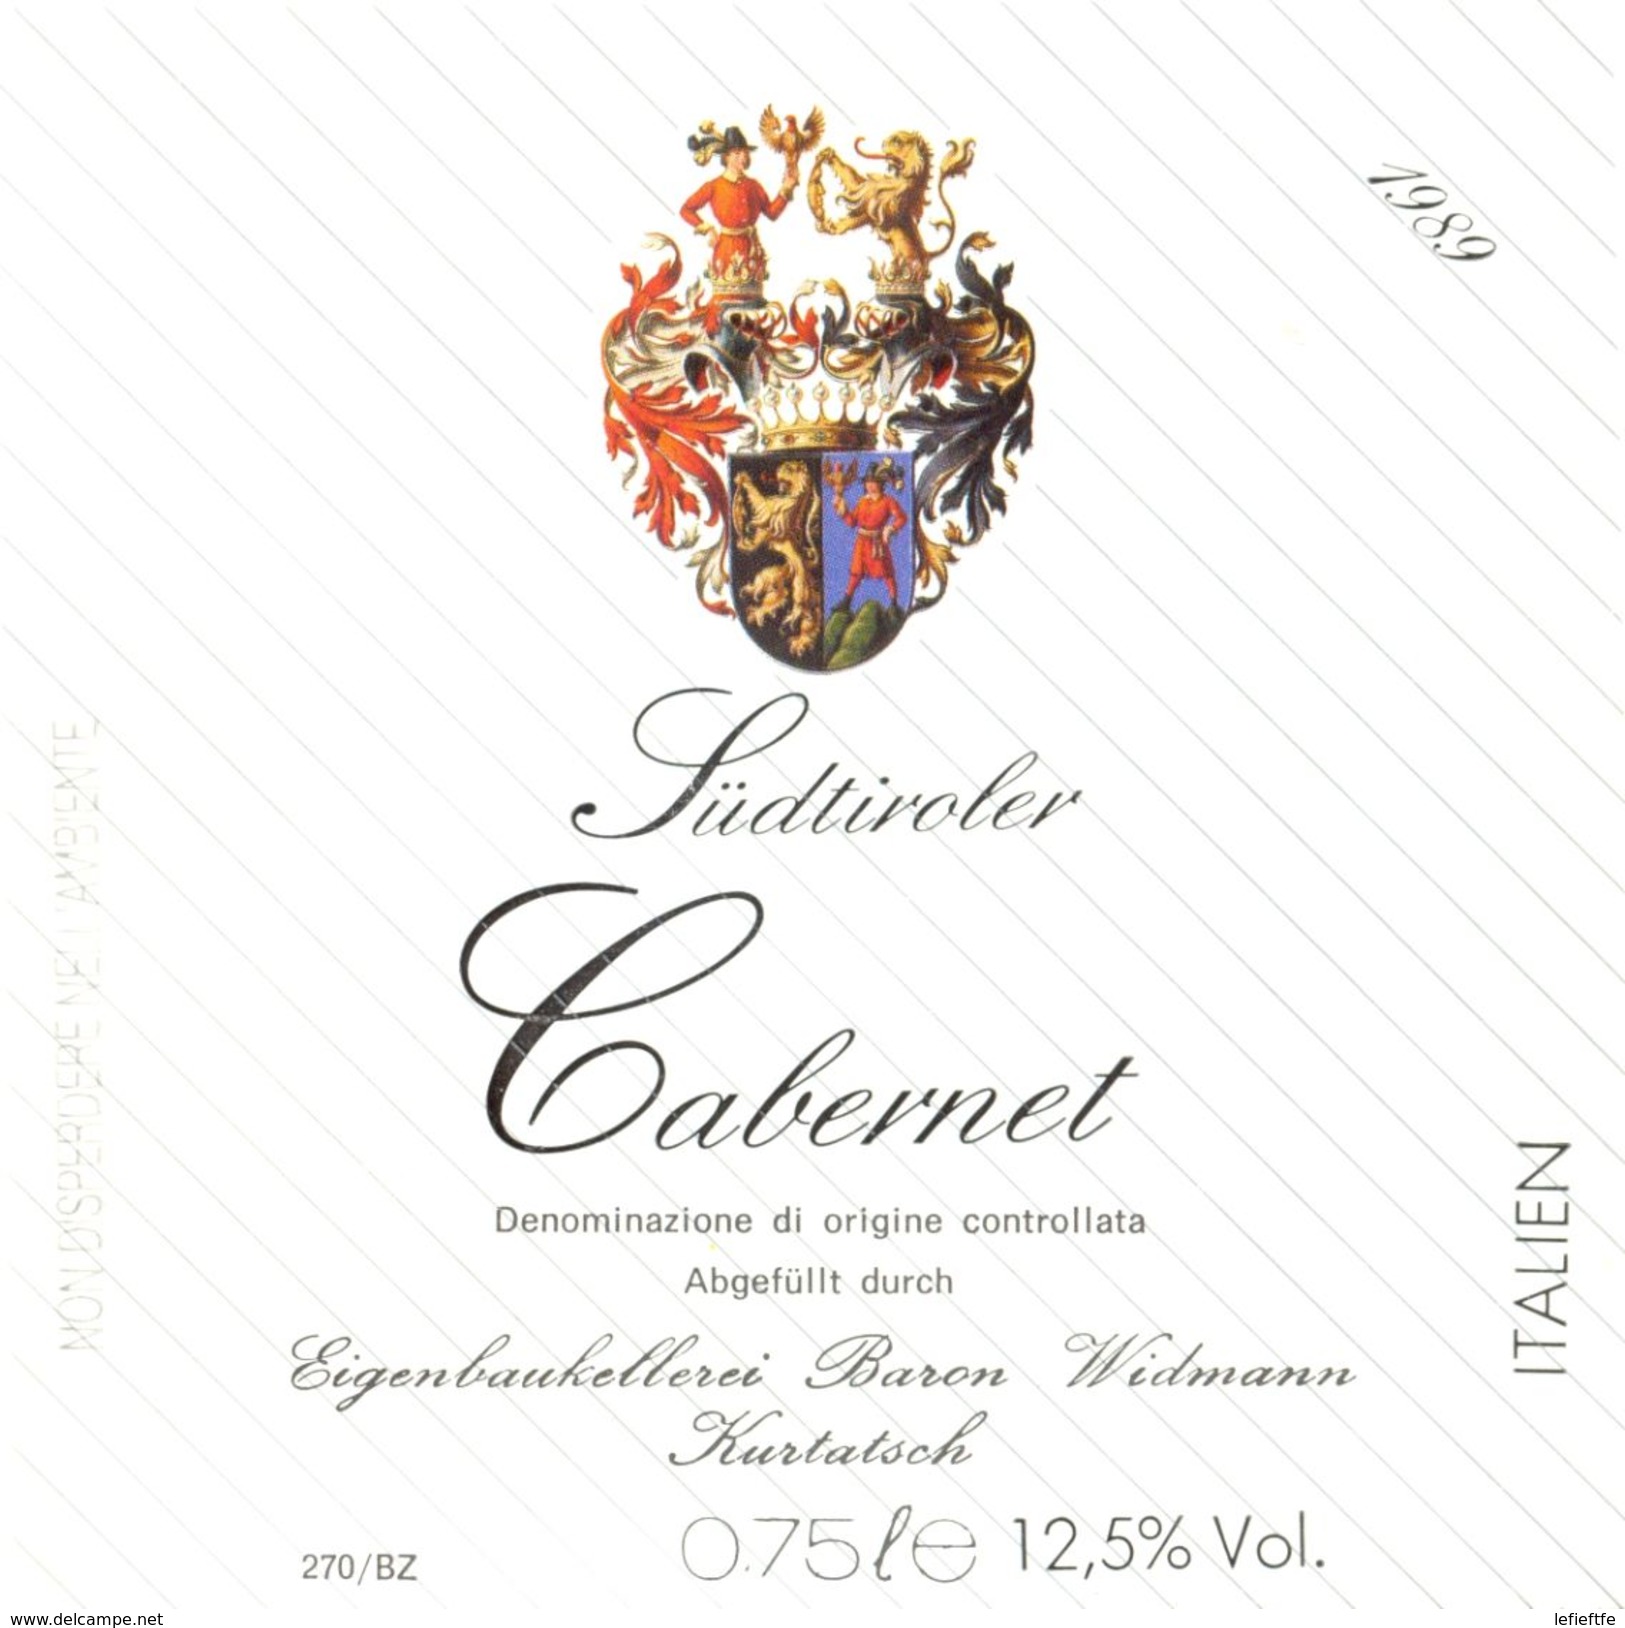 1419 - Italie - 1989 - Cabernet Südtiroler - Baron Widmann - Kurtatsch - Red Wines